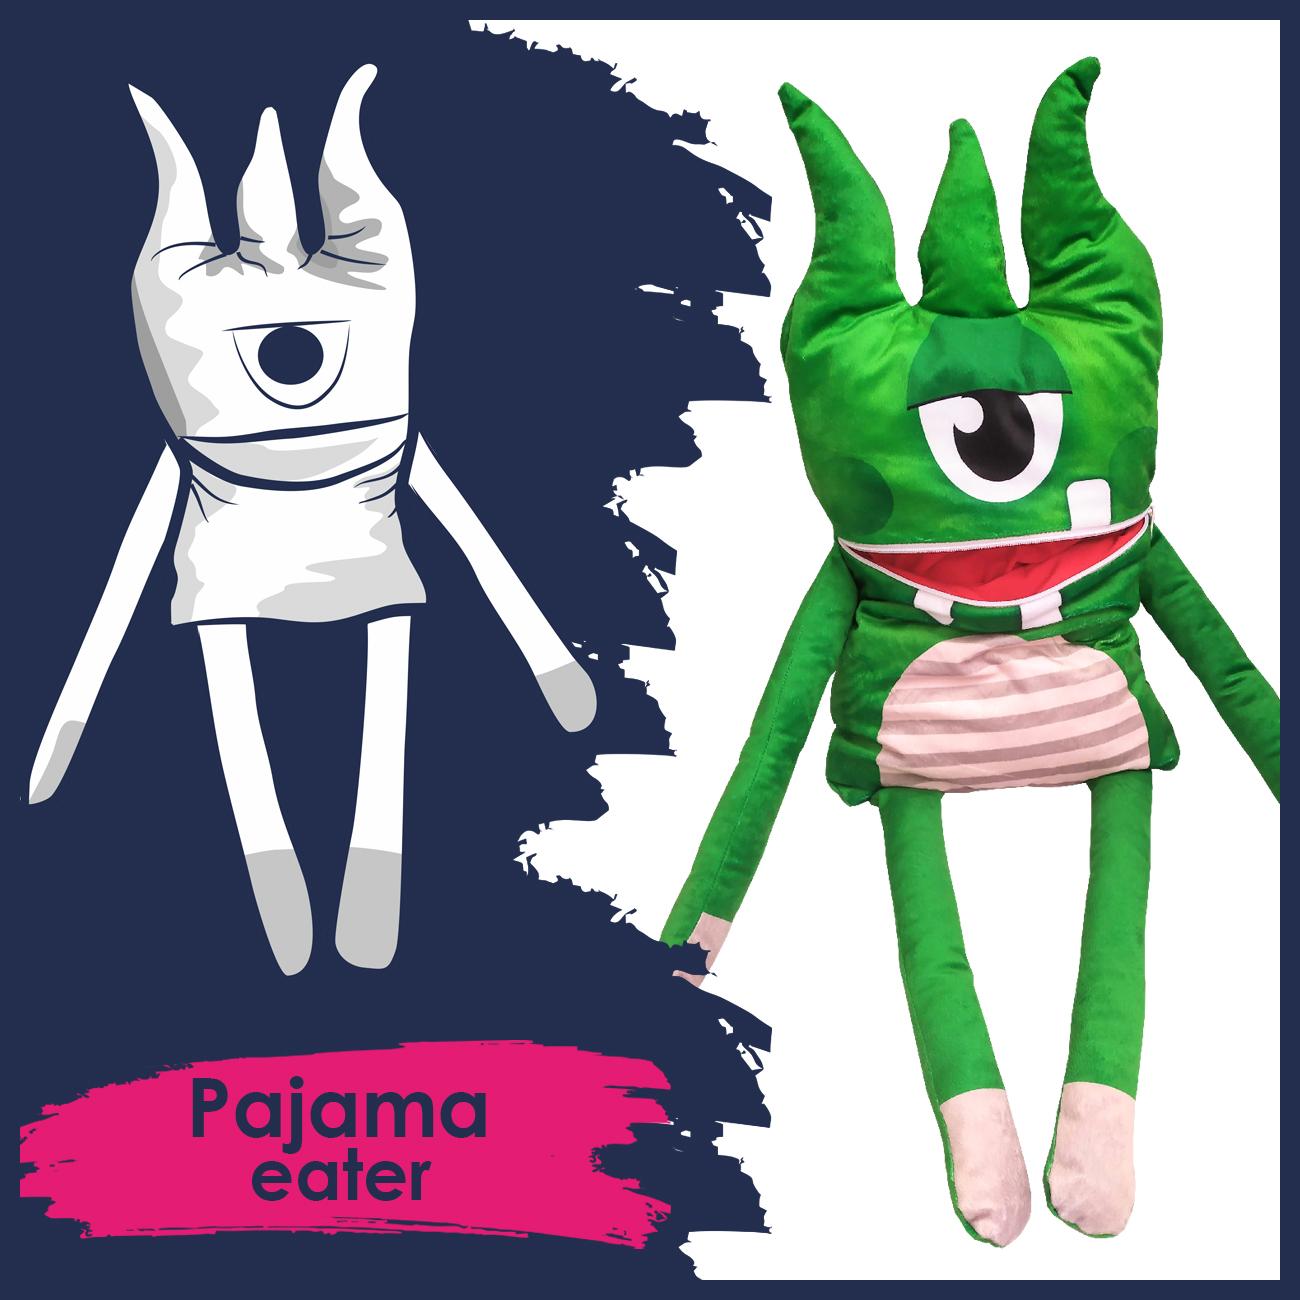 Pajama eater